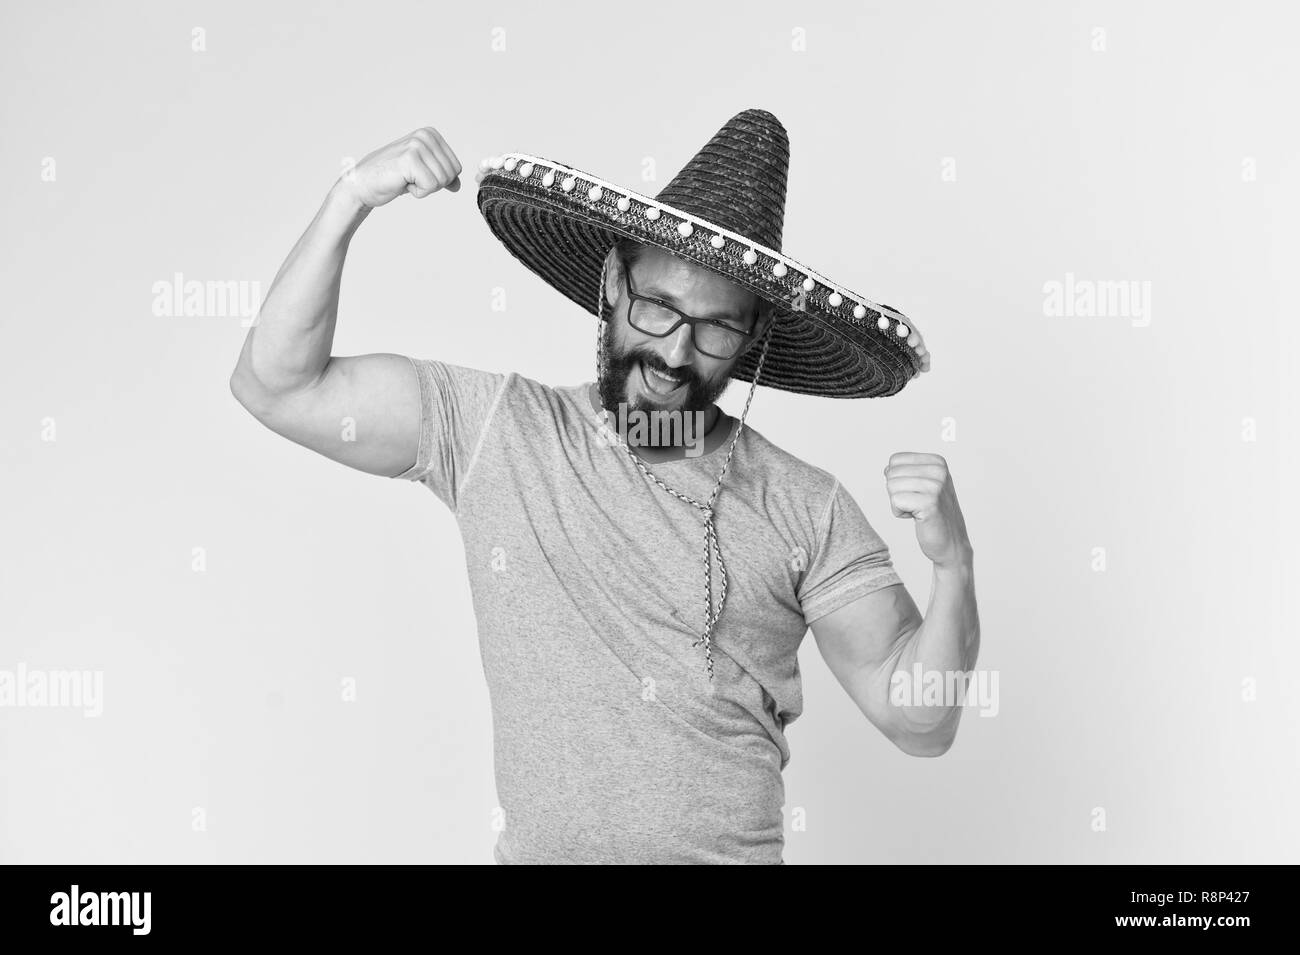 Mexikanische Konzept. Glückliche Menschen Lächeln in Mexican Hat. Mexikanische Mann in sombrero Hut. Mexikanische party Feier. Stockfoto